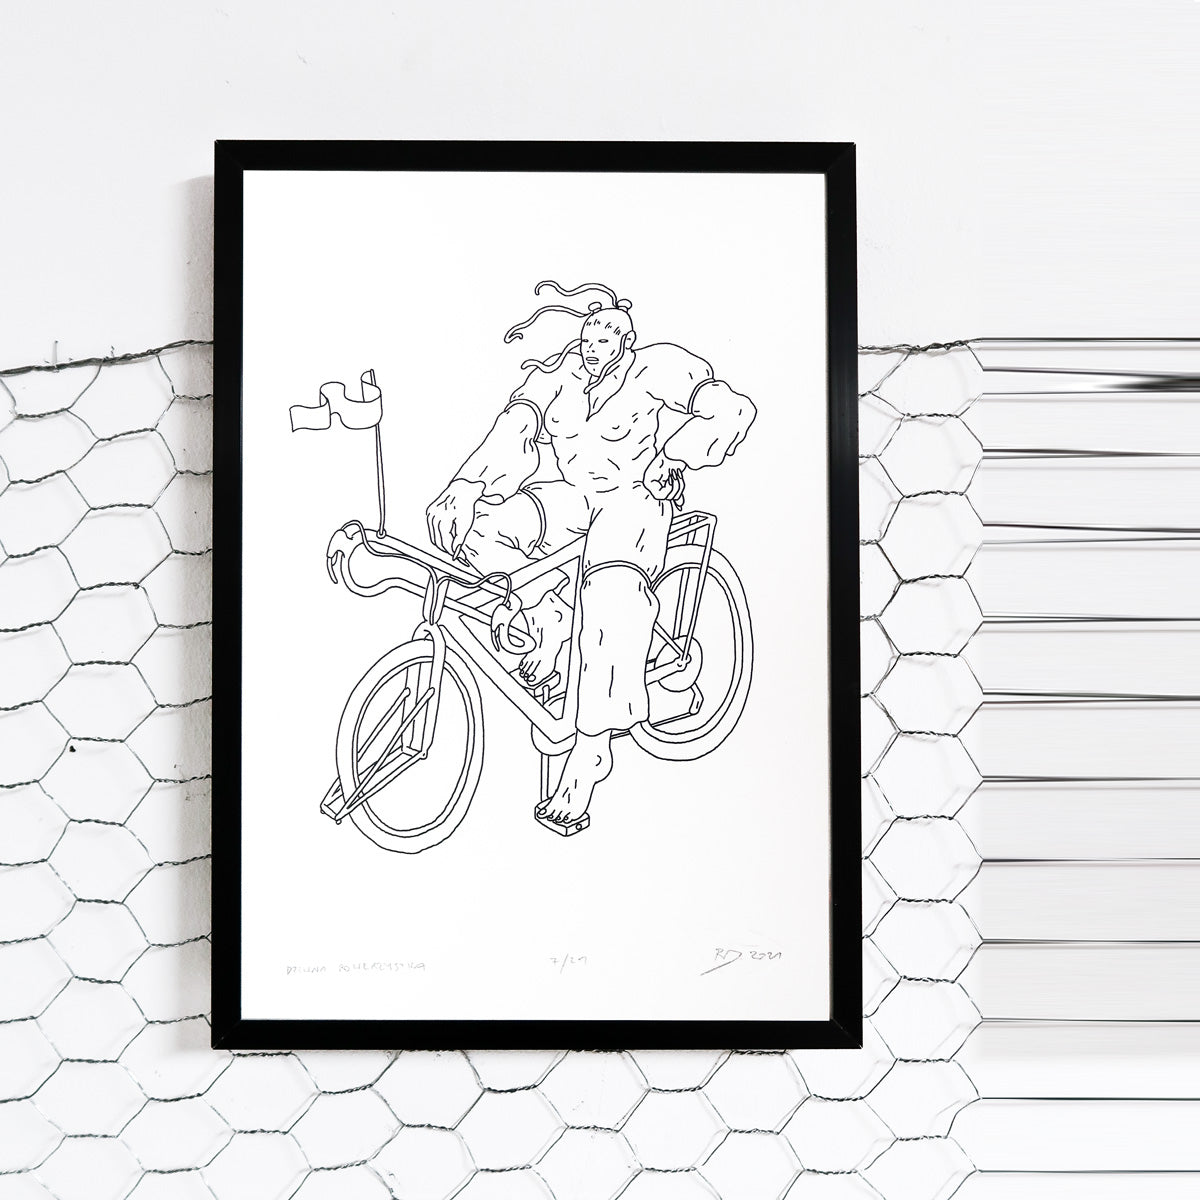 rafał dominik, dziwna rowerzeystka, serigrafia, sitodruk, silkscreen